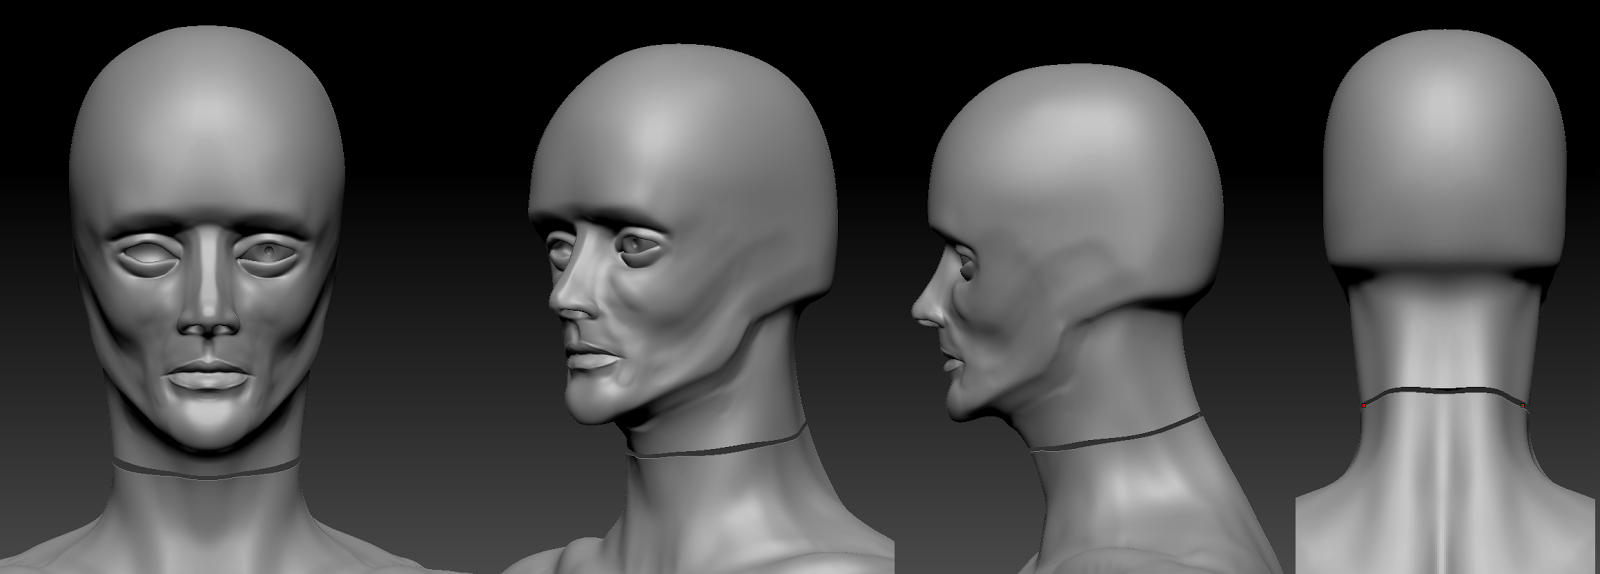 sculpt+1+head+detail.png